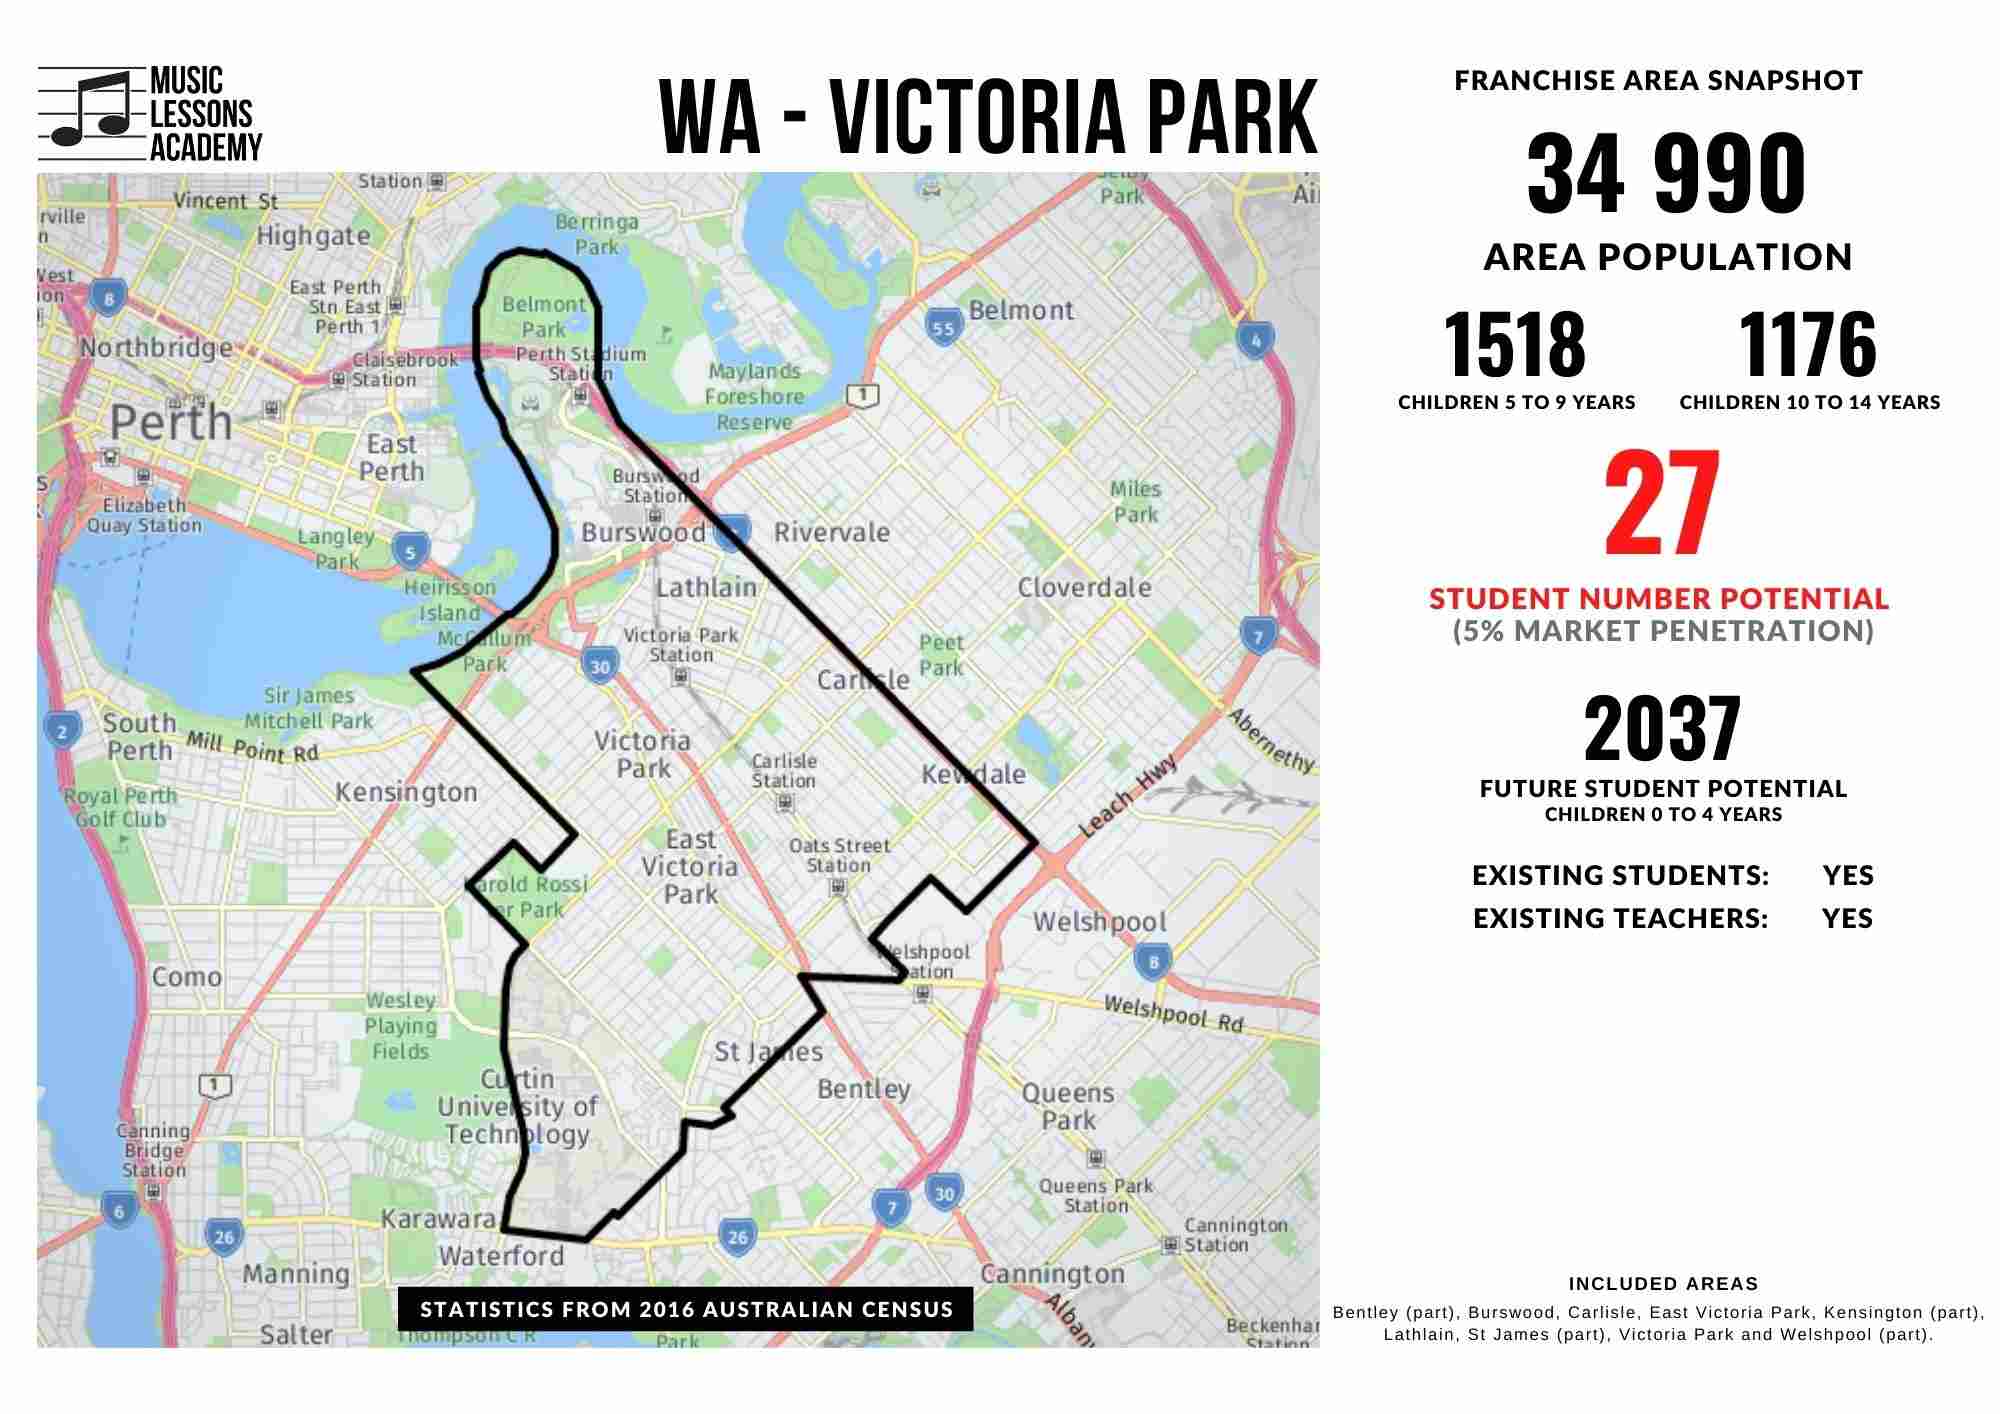 WA Victoria Park Franchise for sale